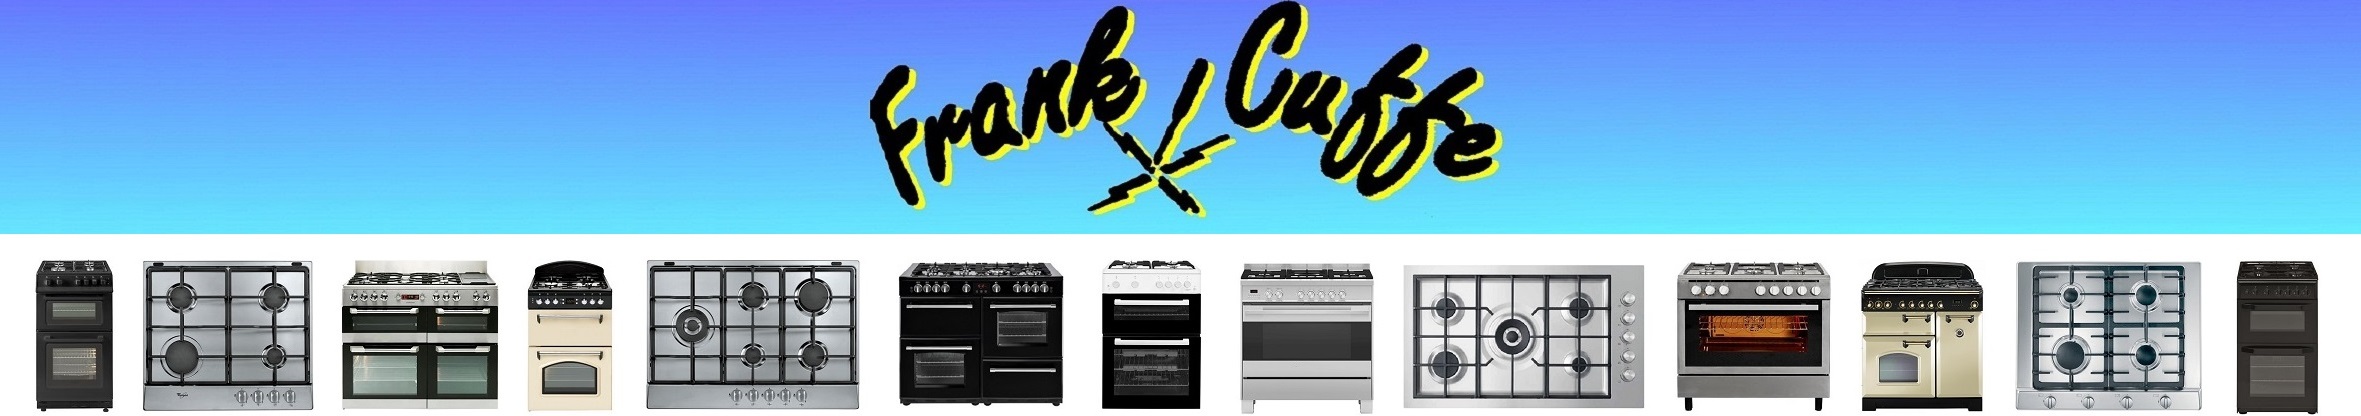 Frank Cuffe Cooker Repairs